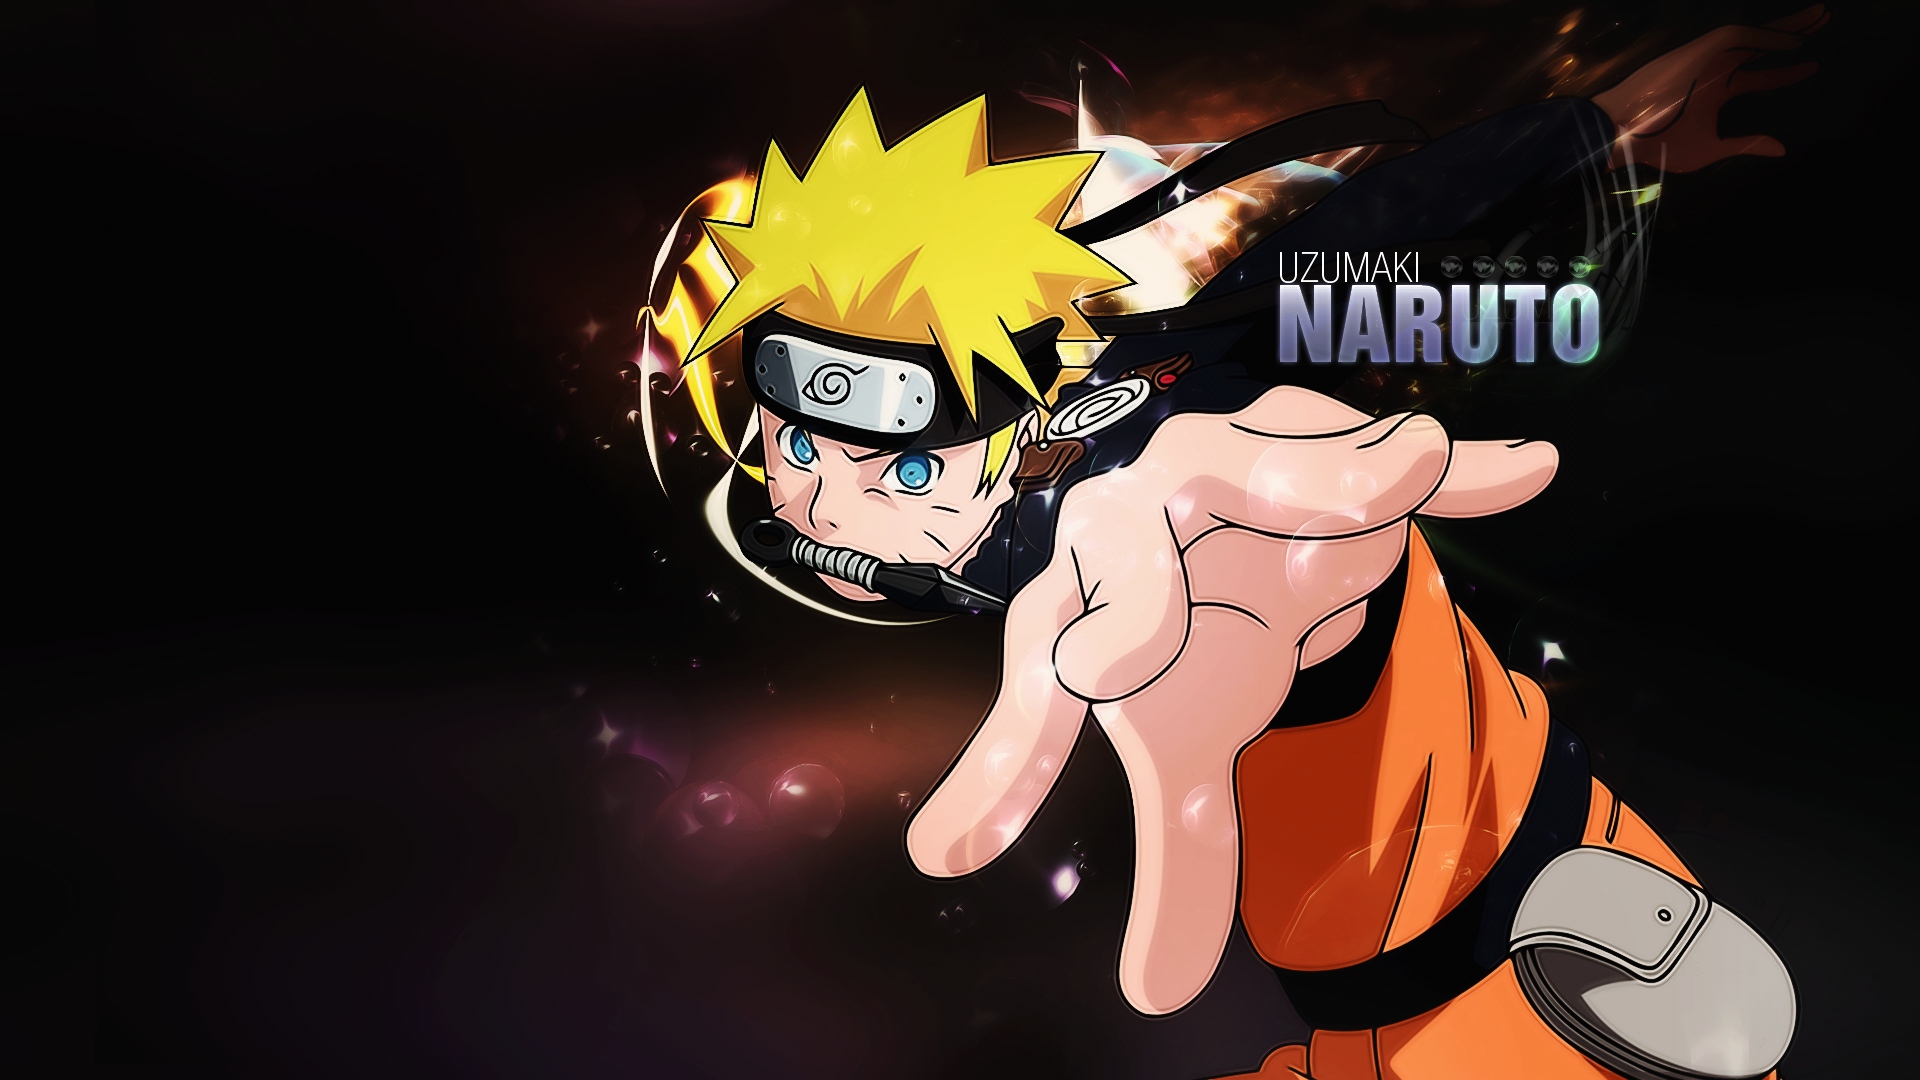 Naruto là một trong những bộ anime/manga nổi tiếng và yêu thích nhất của thế hệ trẻ. Nếu bạn là một fan hâm mộ của Naruto, đừng bỏ lỡ hình nền Naruto thật đẹp mắt trong ảnh liên quan.